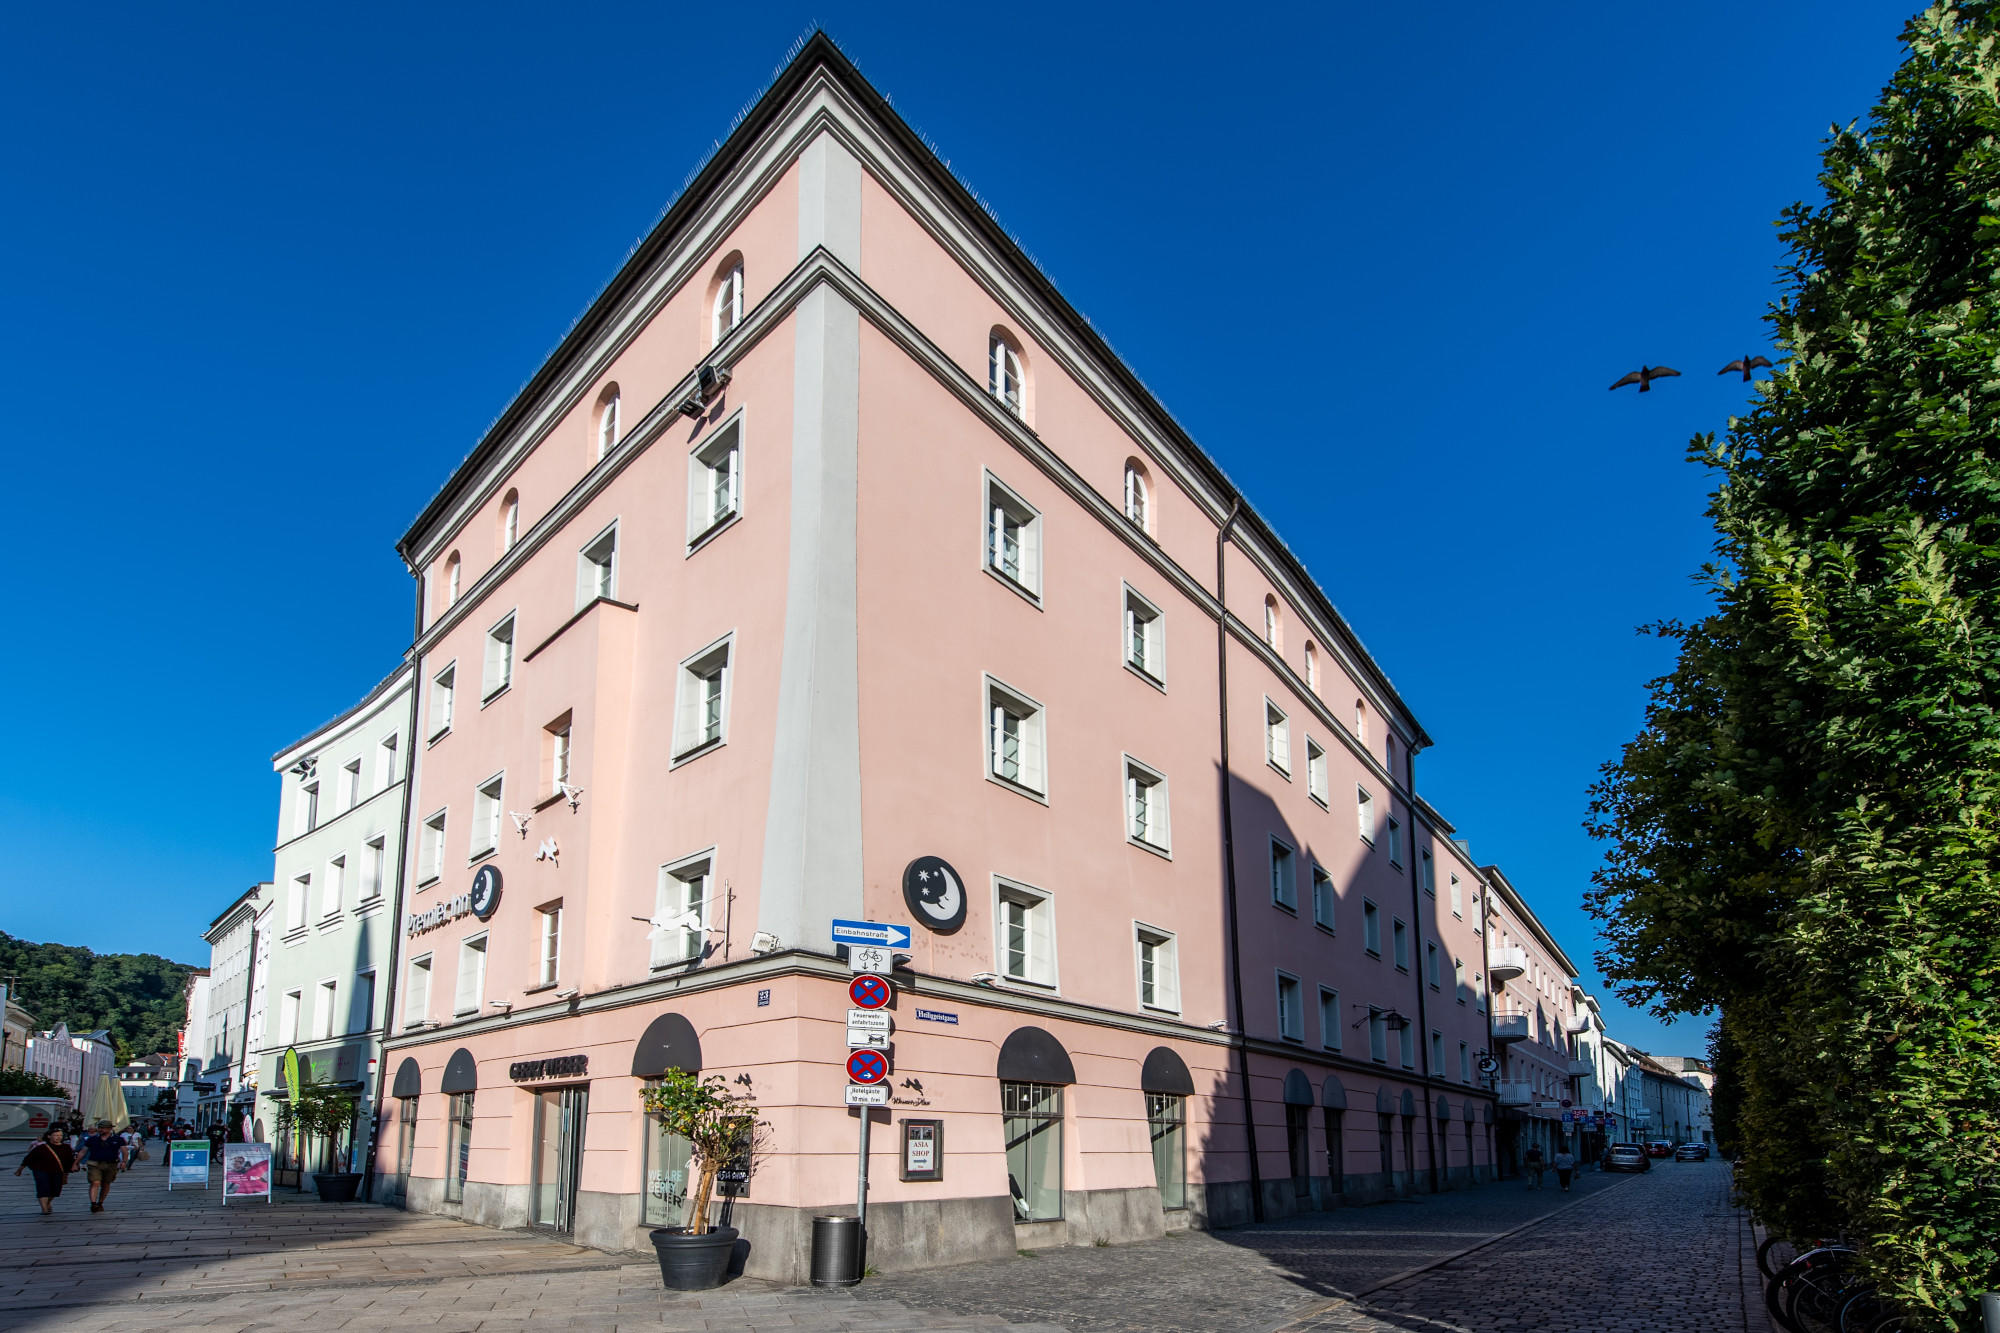 Bild 1 Premier Inn Passau Weisser Hase hotel in Passau